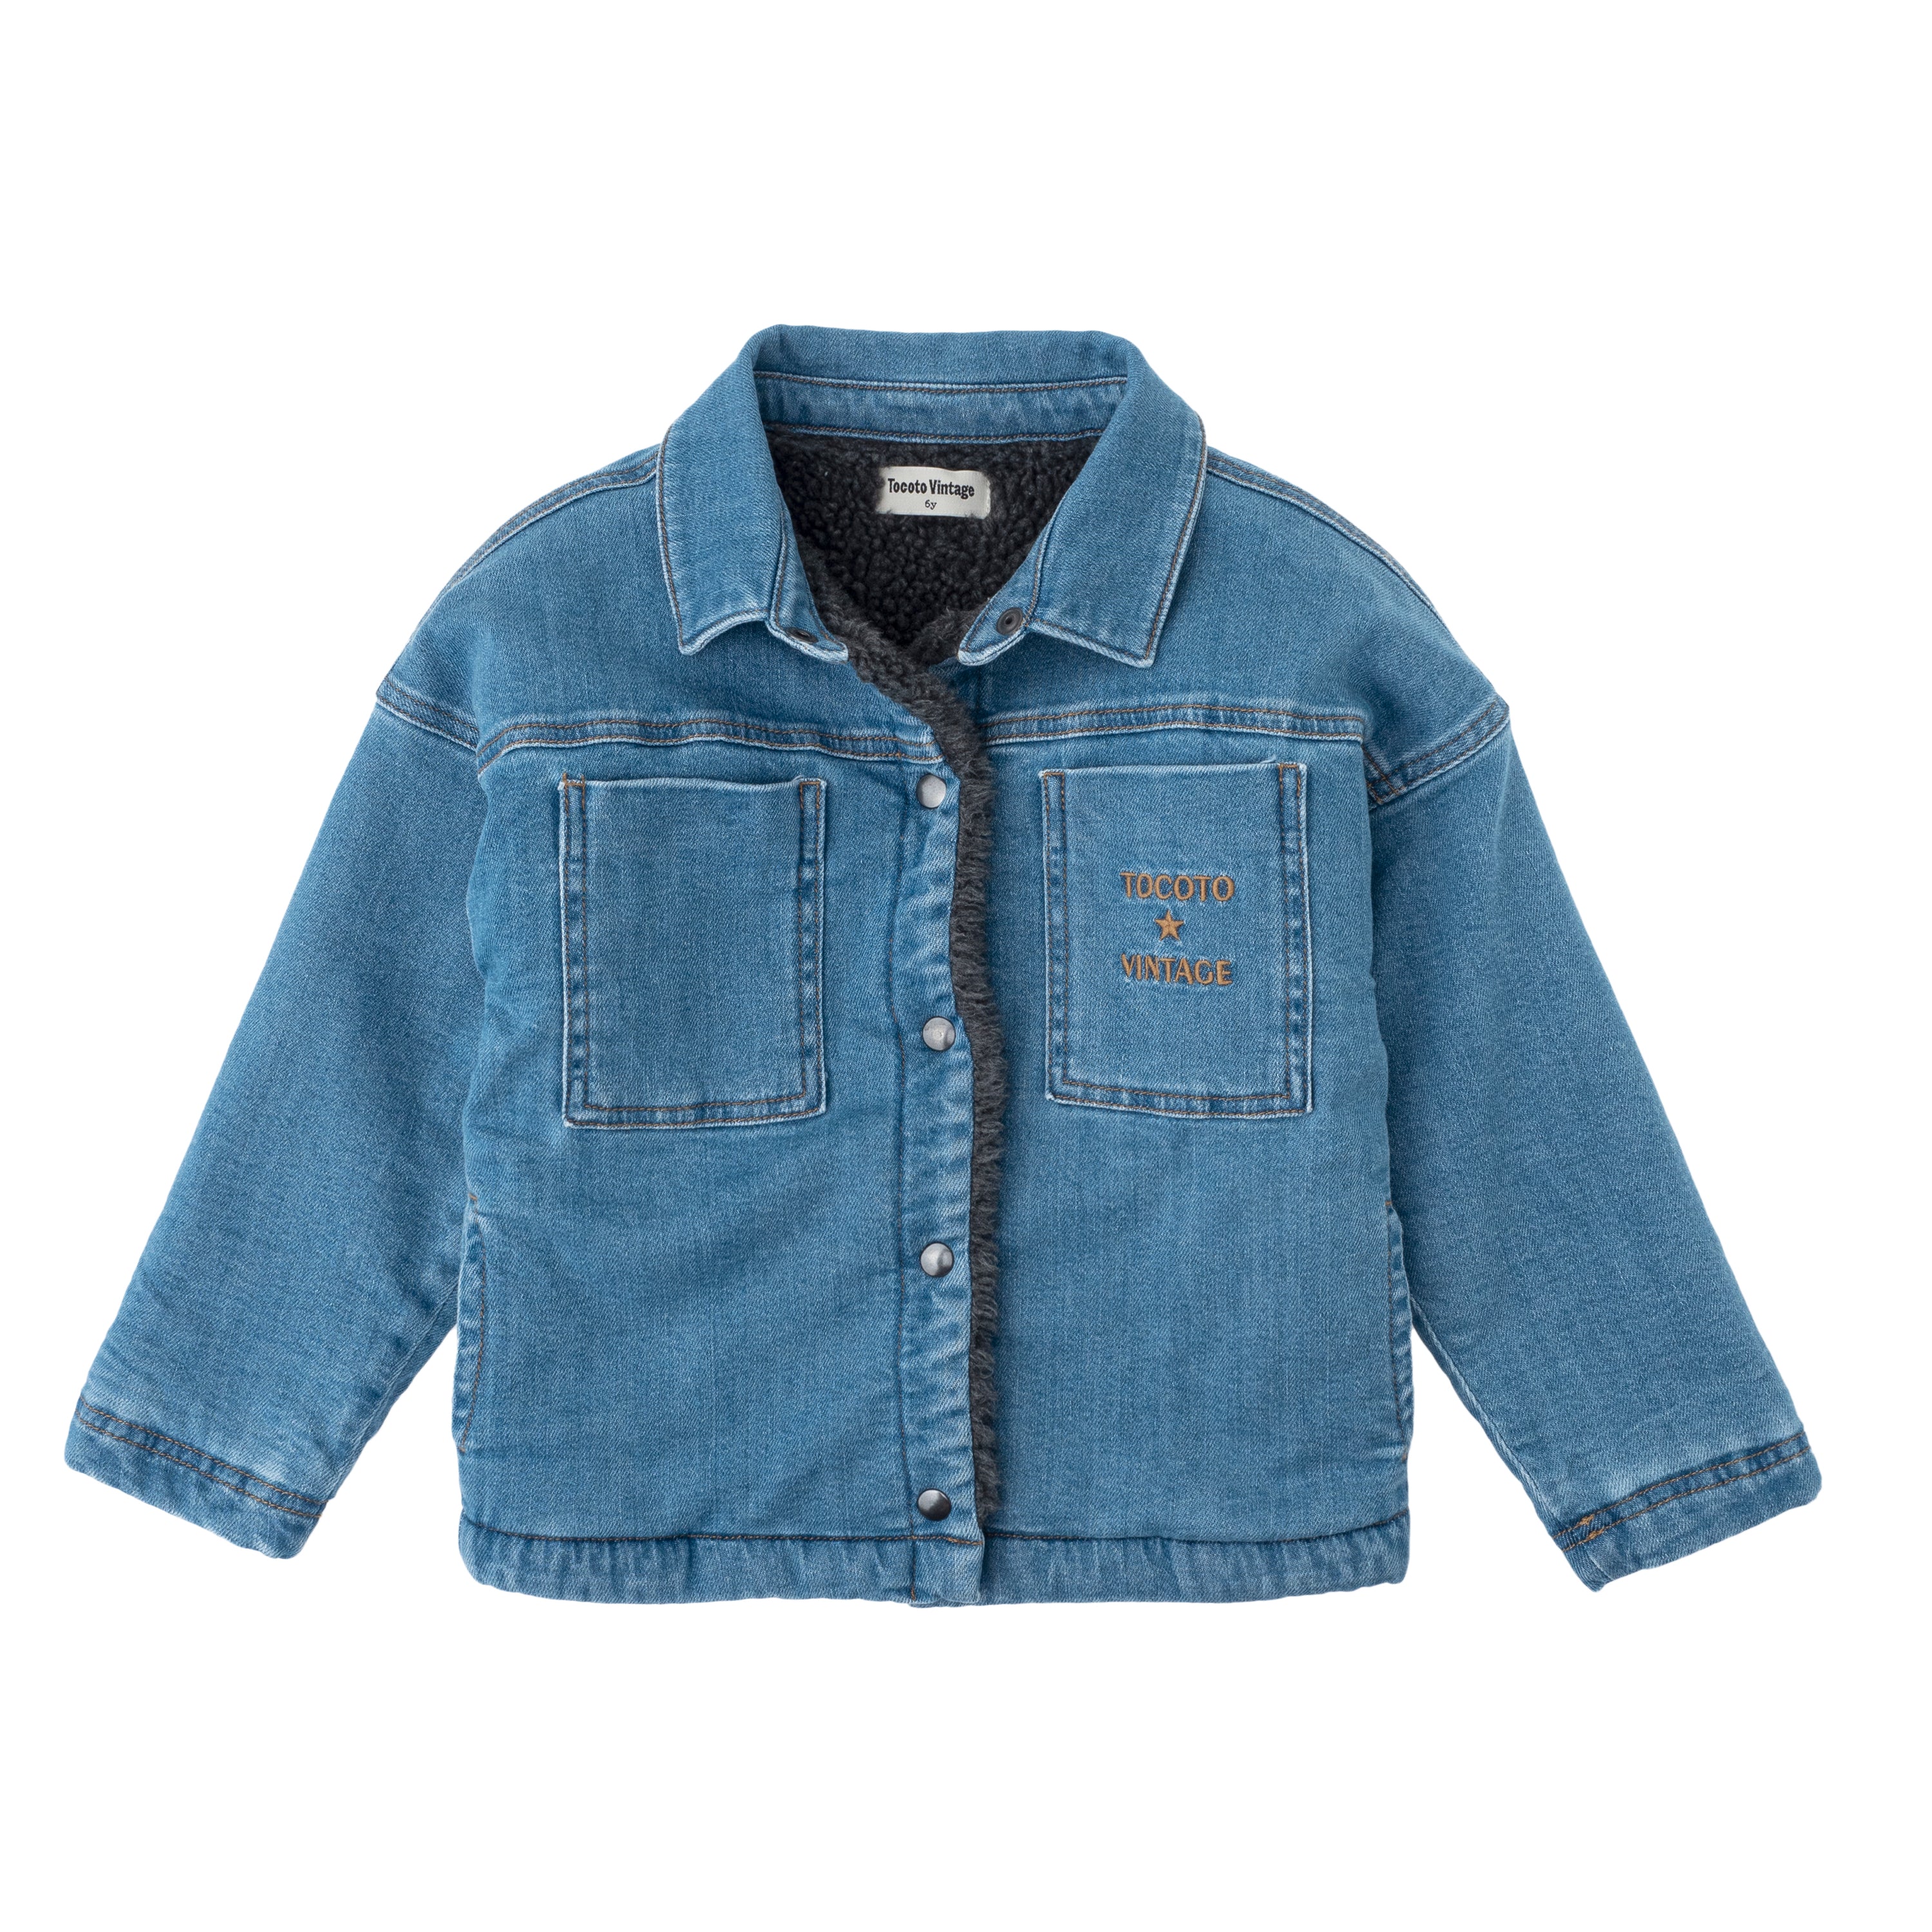 Tocoto Vintage - denim jacket - blue